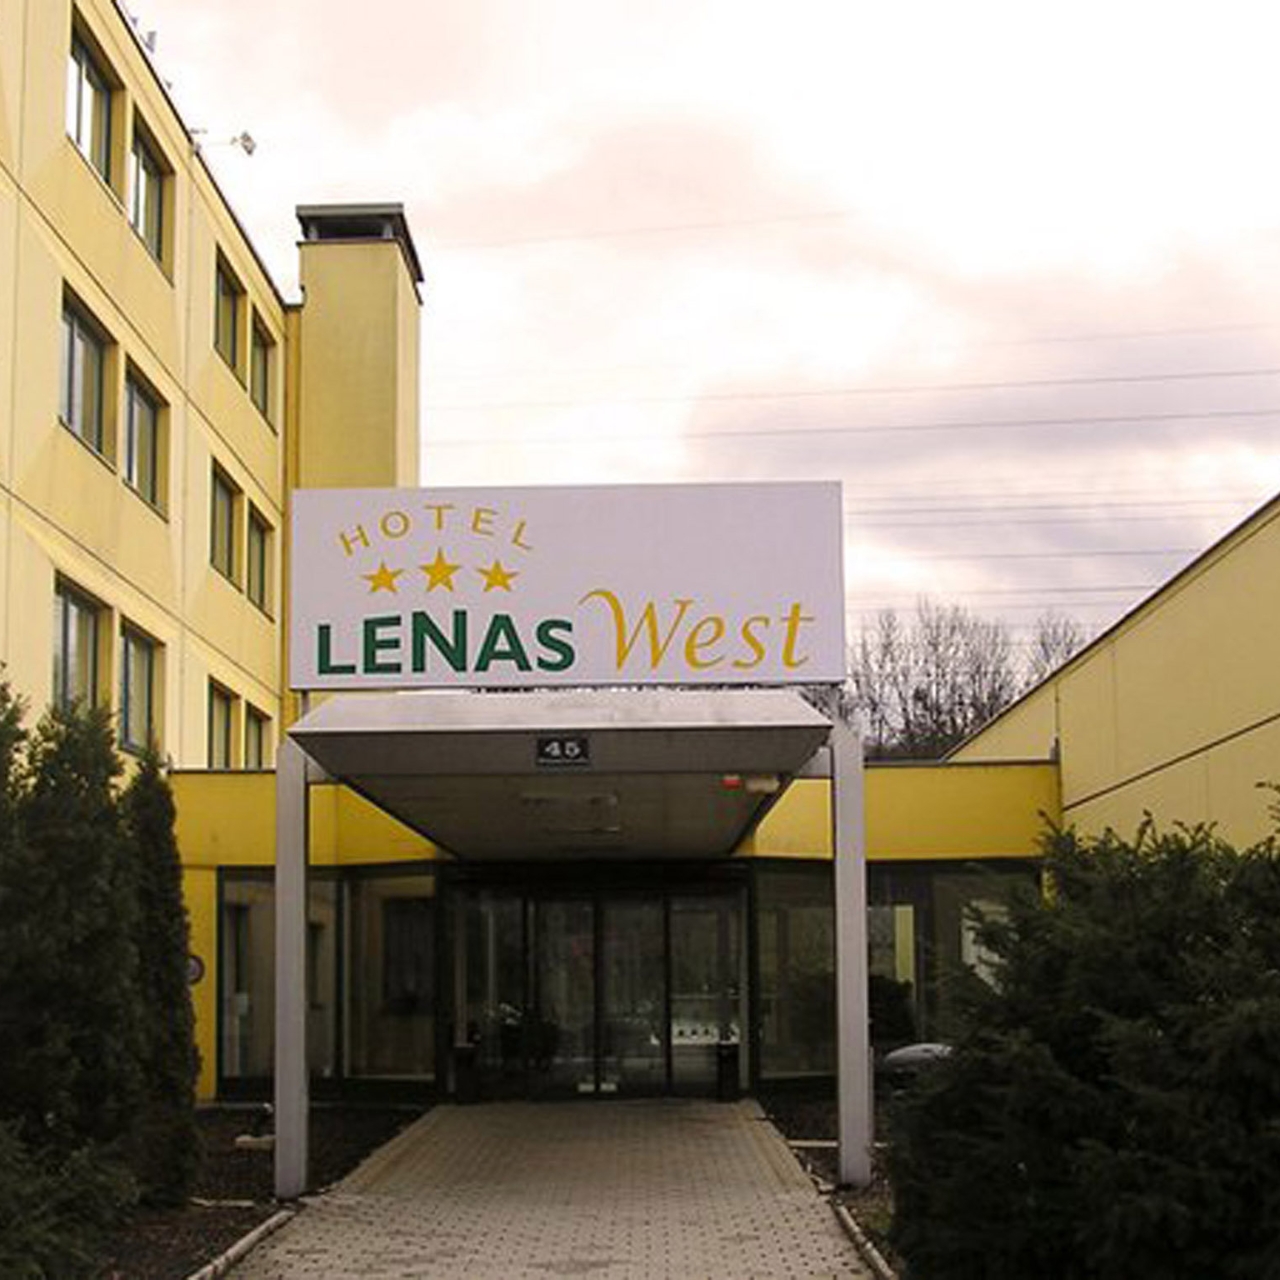 Hotel Lenas West - 3 HRS star hotel in Vienna (Vienna)